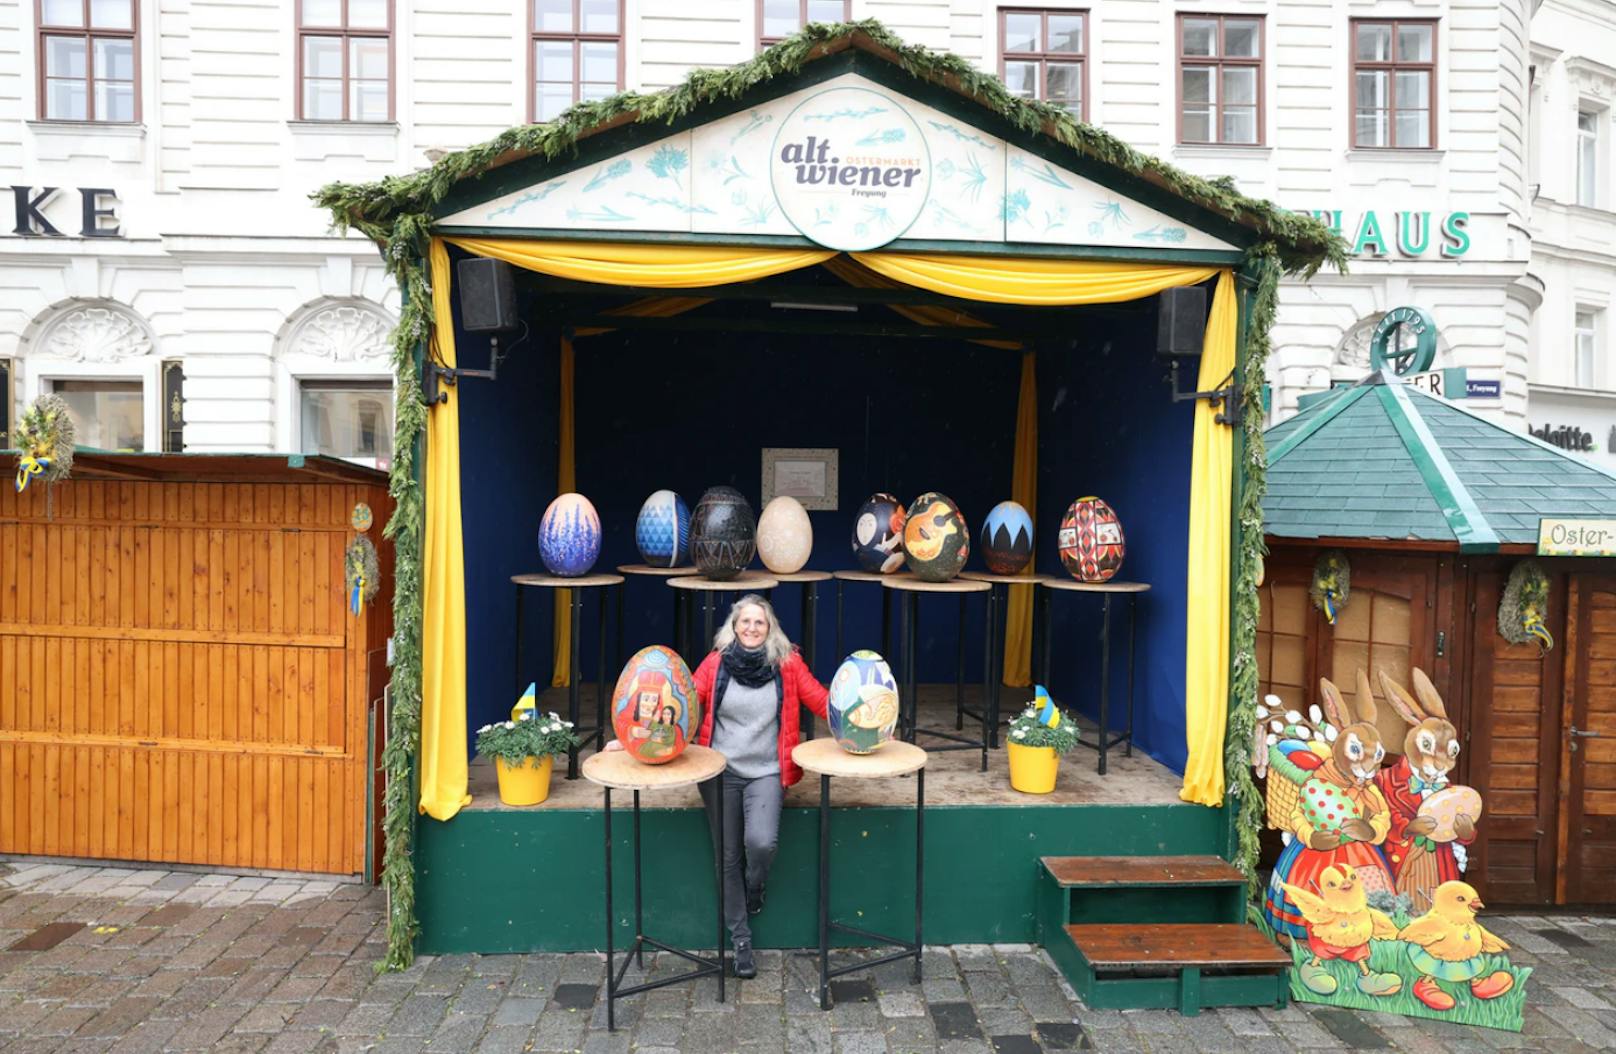 Marktchefin Alexandra Holzer nahm die Kunst-Eier aus der Ukraine in Empfang. Pünktlich zum Start des Ostermarktes sind sie ab 1. April auf der Freyung zu sehen.